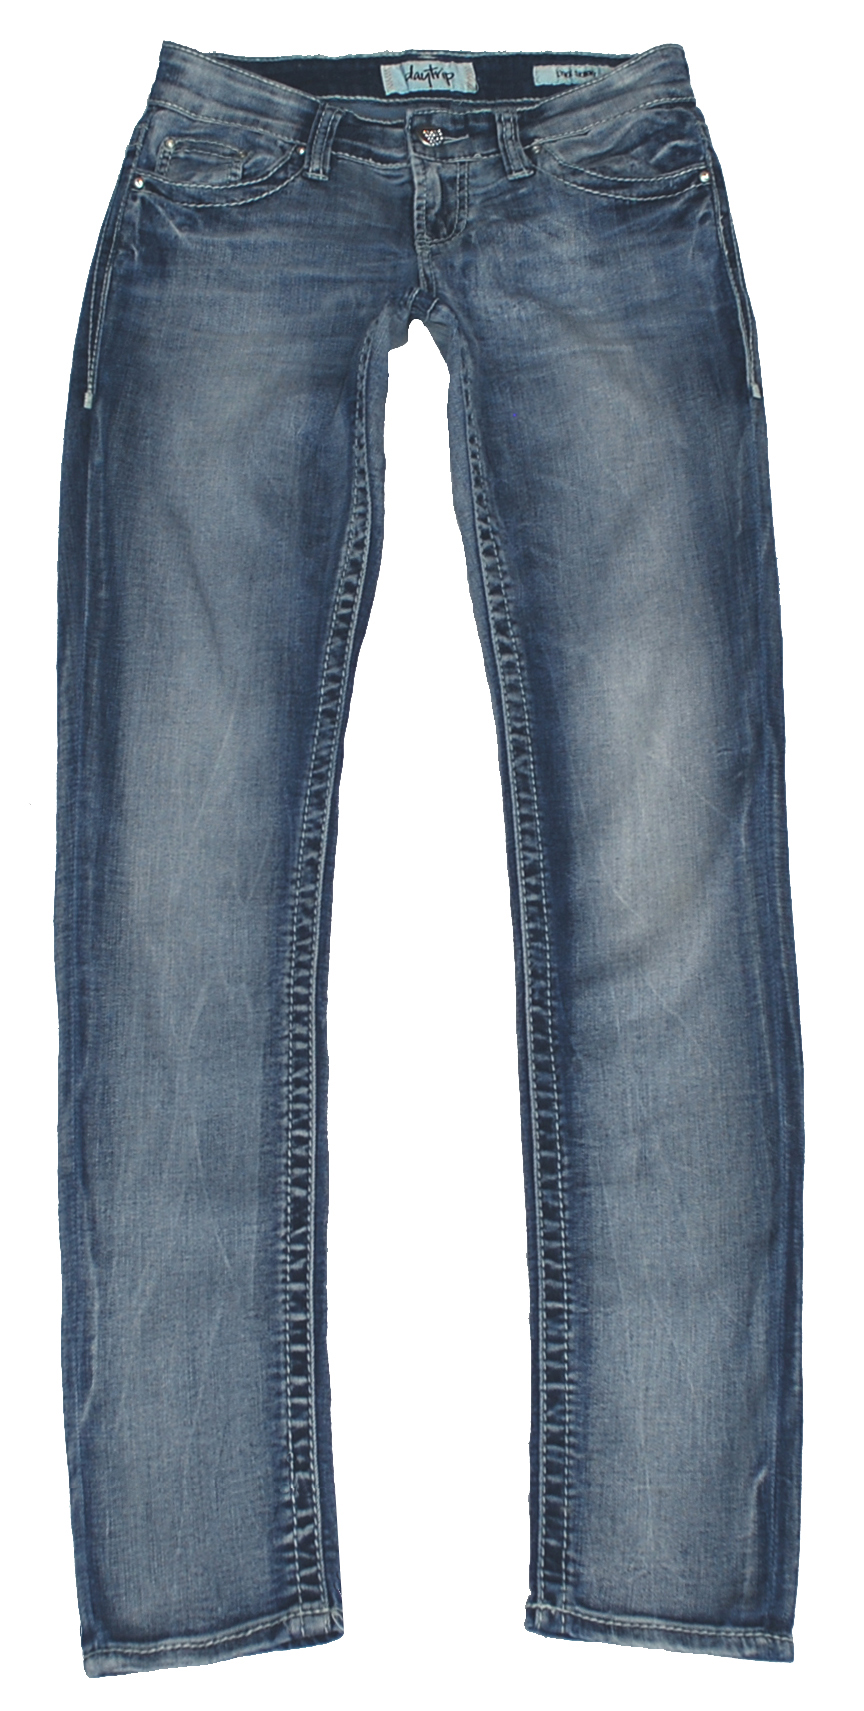 daytrip lynx jeans